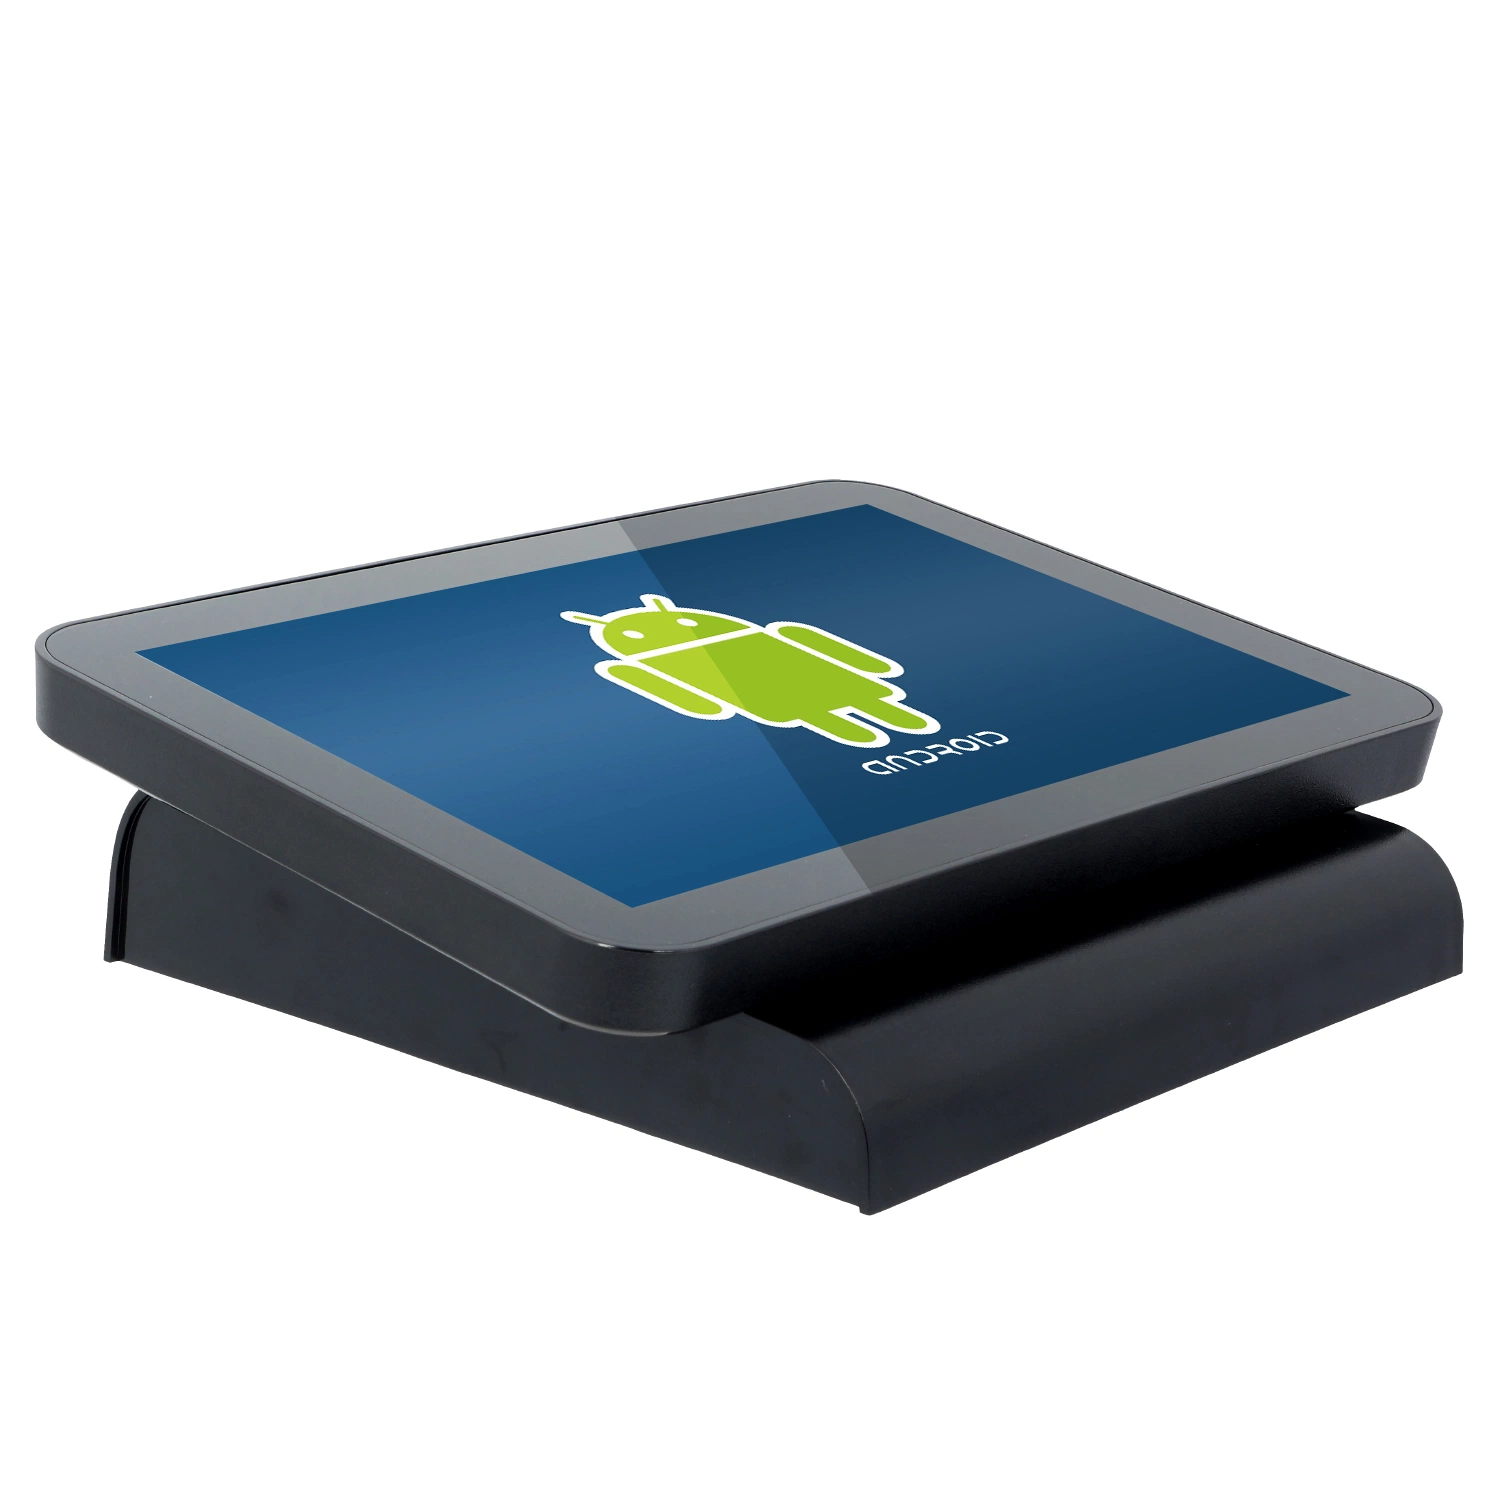 Ordinateur portable 11,6 pouces écran tactile Caisse enregistreuse tablette Android système POS